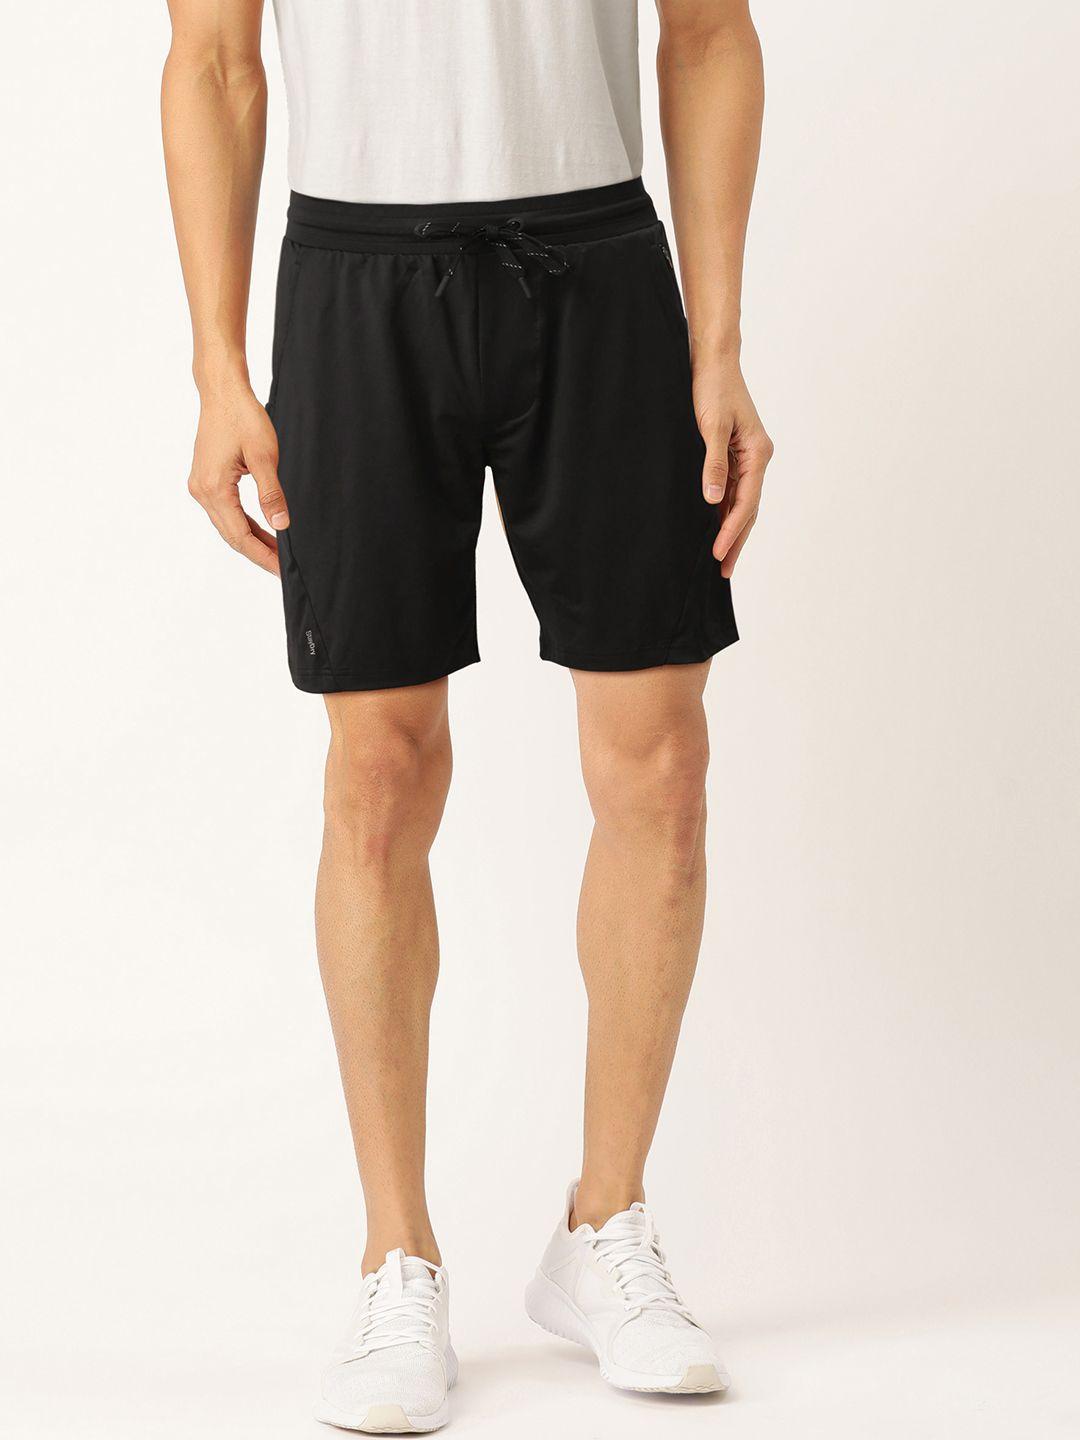 jockey-men-black-solid-regular-fit-sports-shorts